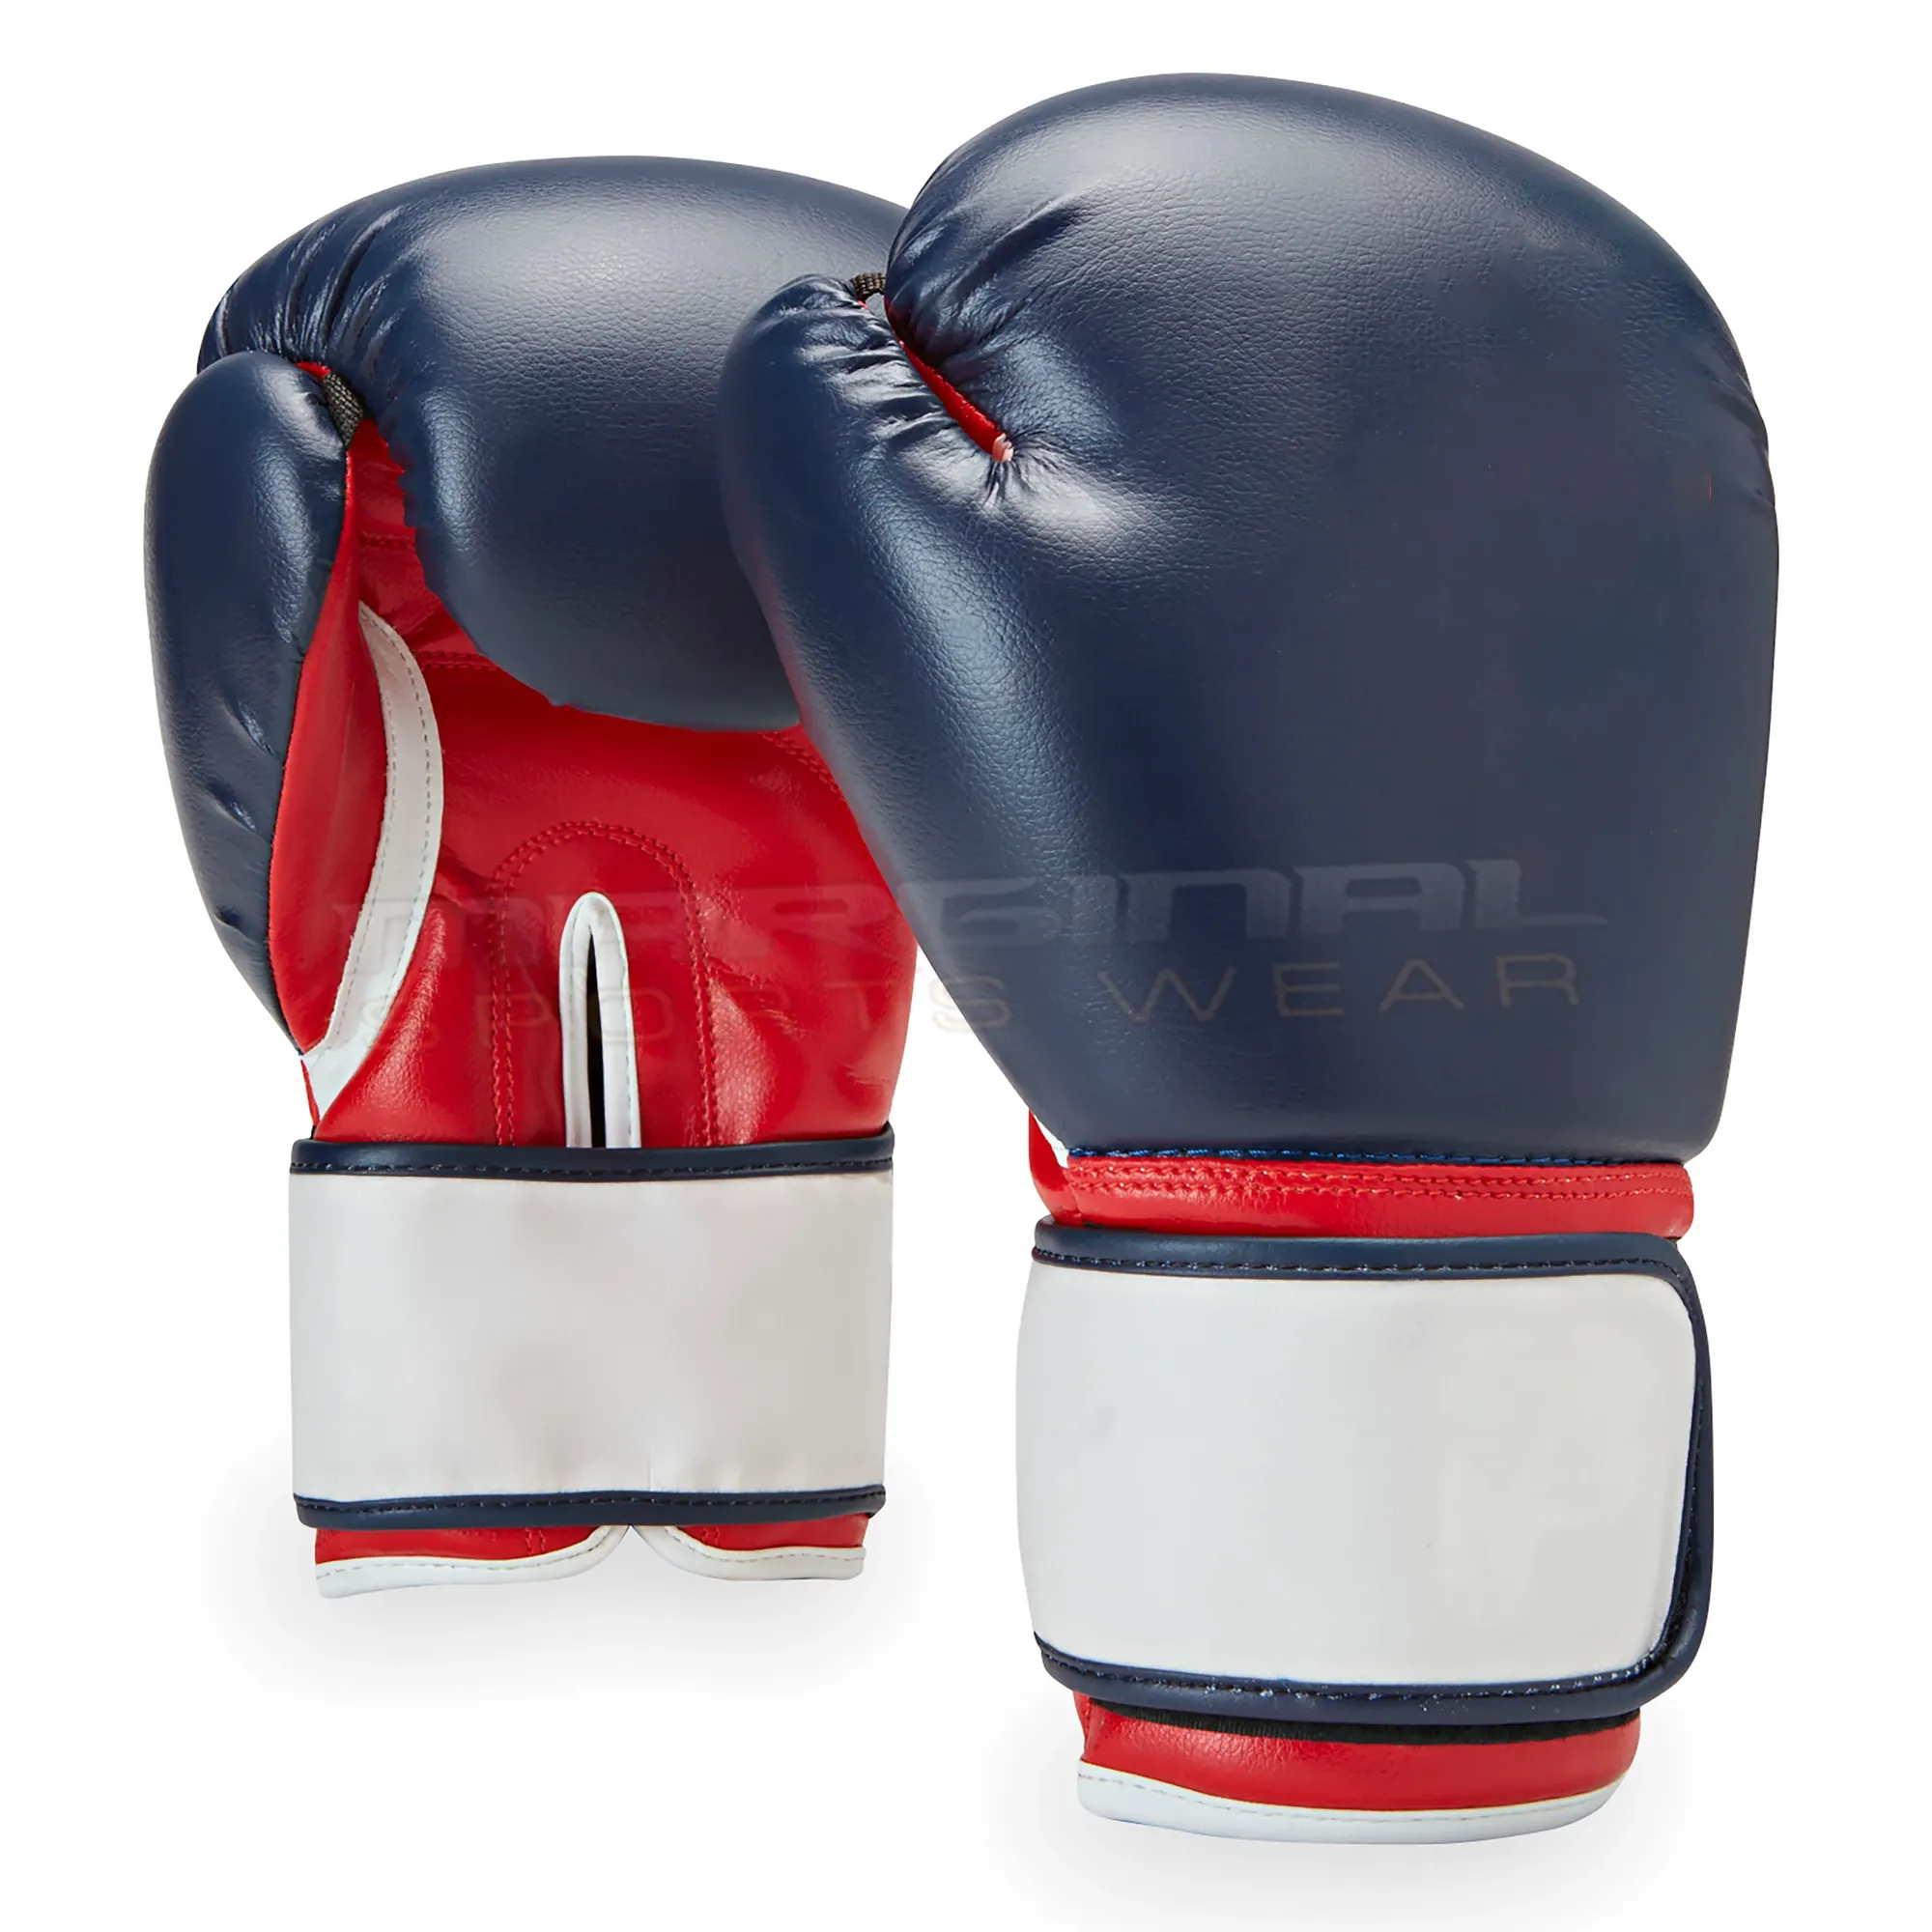 Men & Women Boxing Muay Thai Gloves Leather Boxing Gloves Kickboxing Training Punching Bag Gloves For Sandbag Training